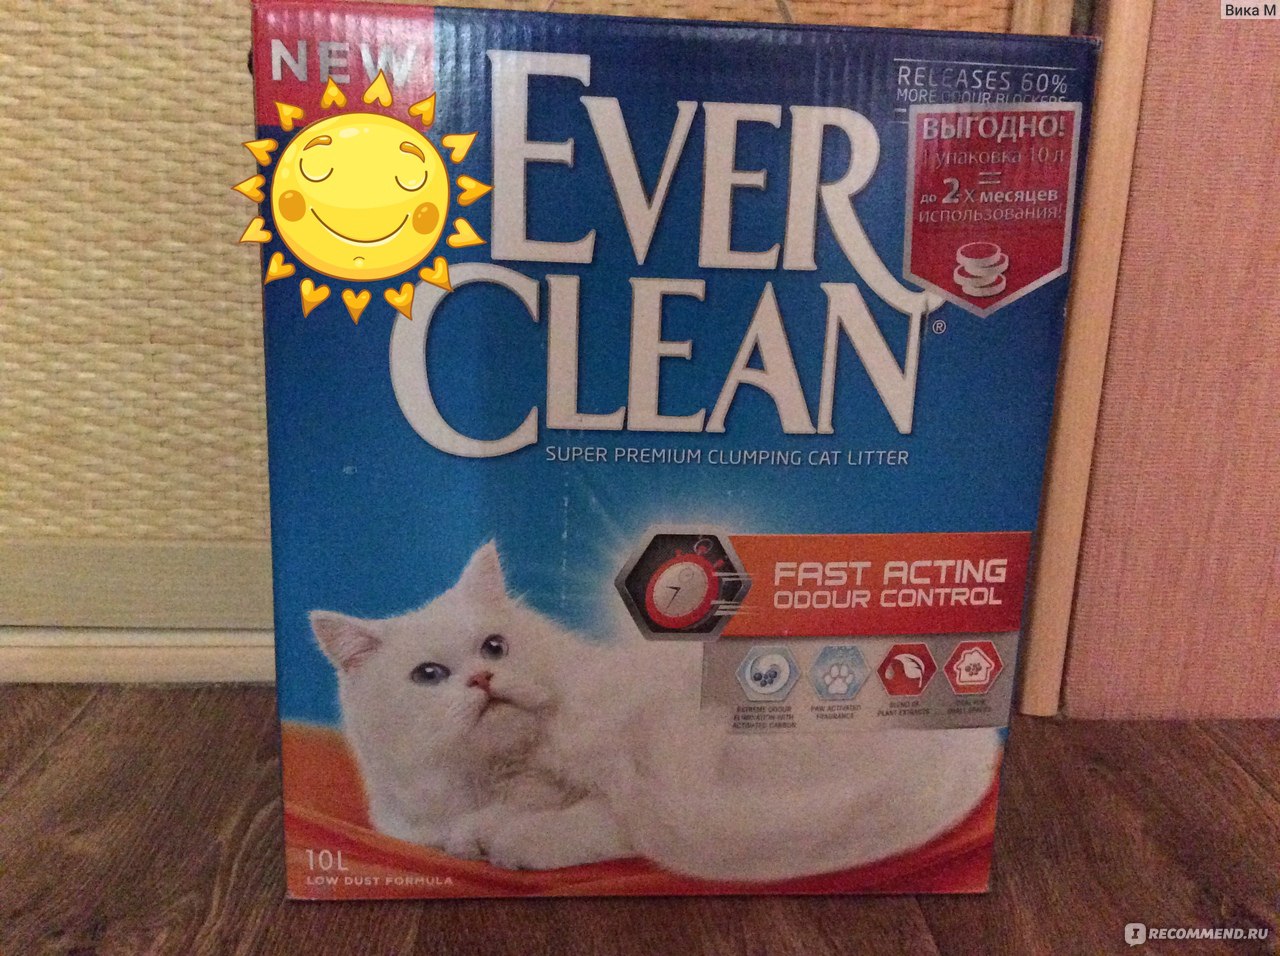 Наполнитель для кошачьего туалета фирмы Ever Clean